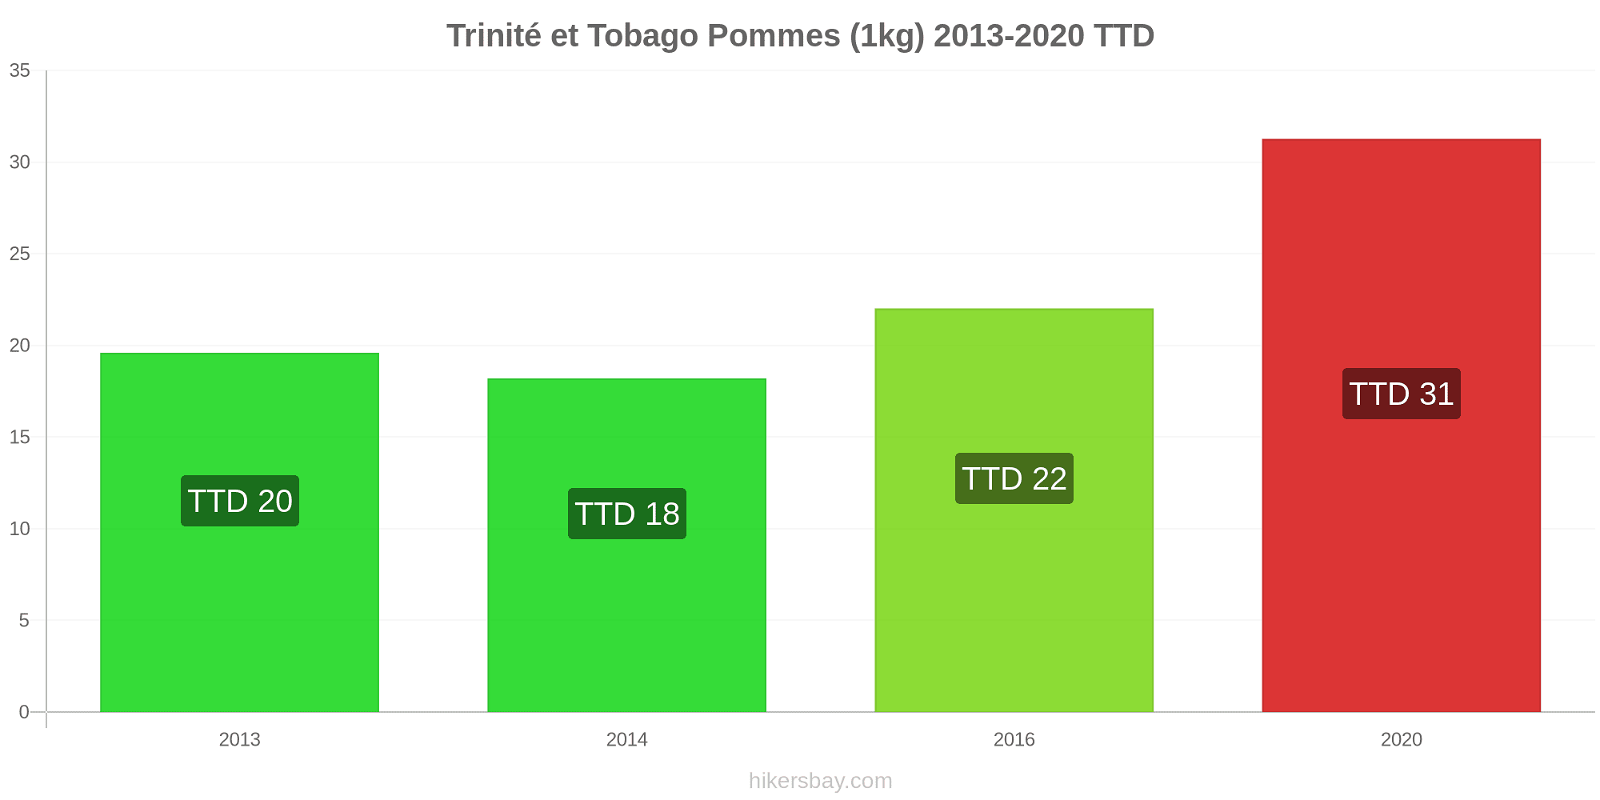 Trinité et Tobago changements de prix Pommes (1kg) hikersbay.com